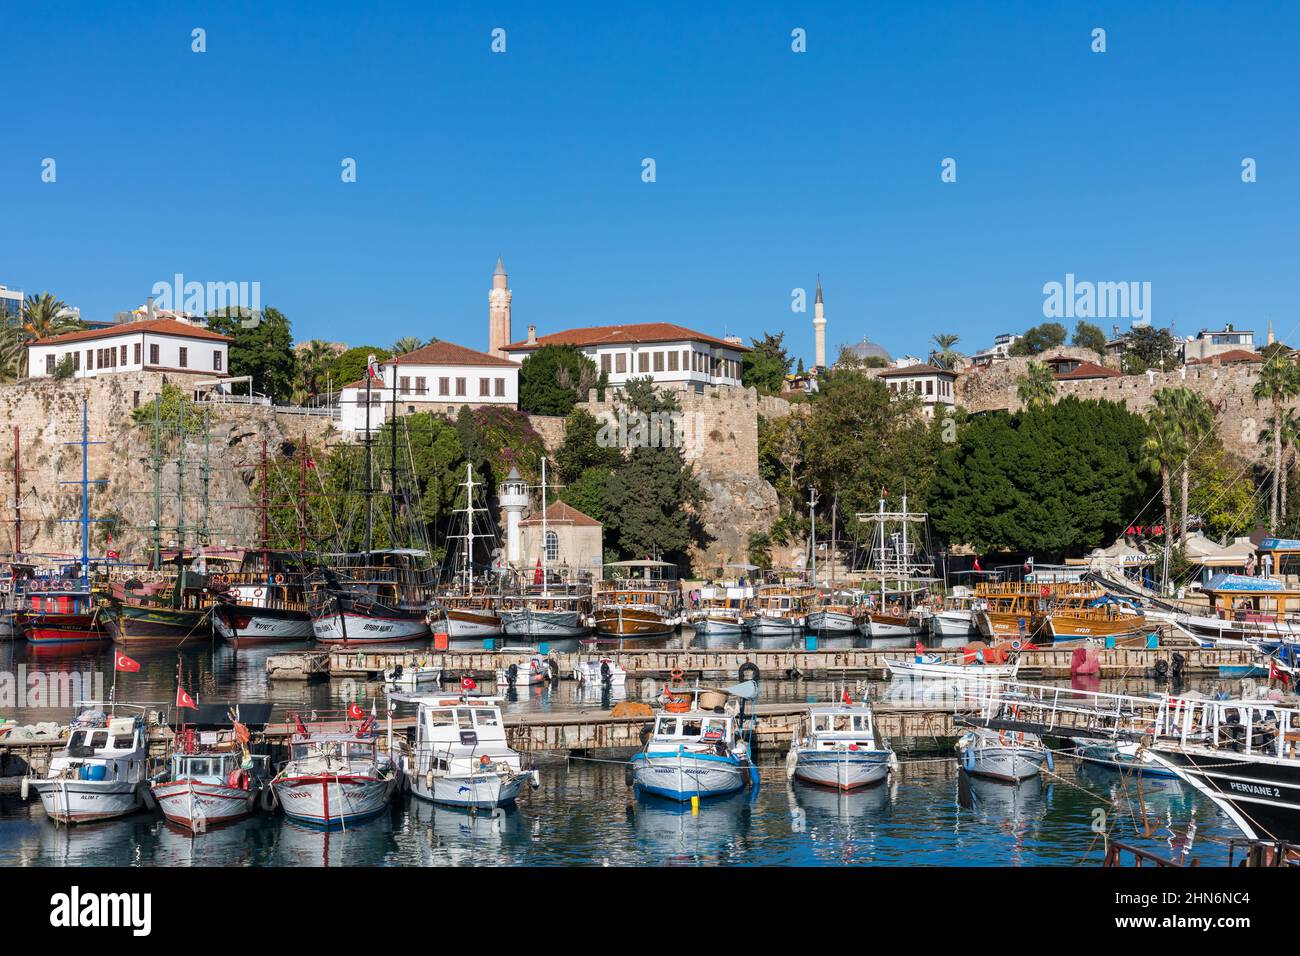 The Old Port of Antalya - Antalya, Turkey Stock Photo